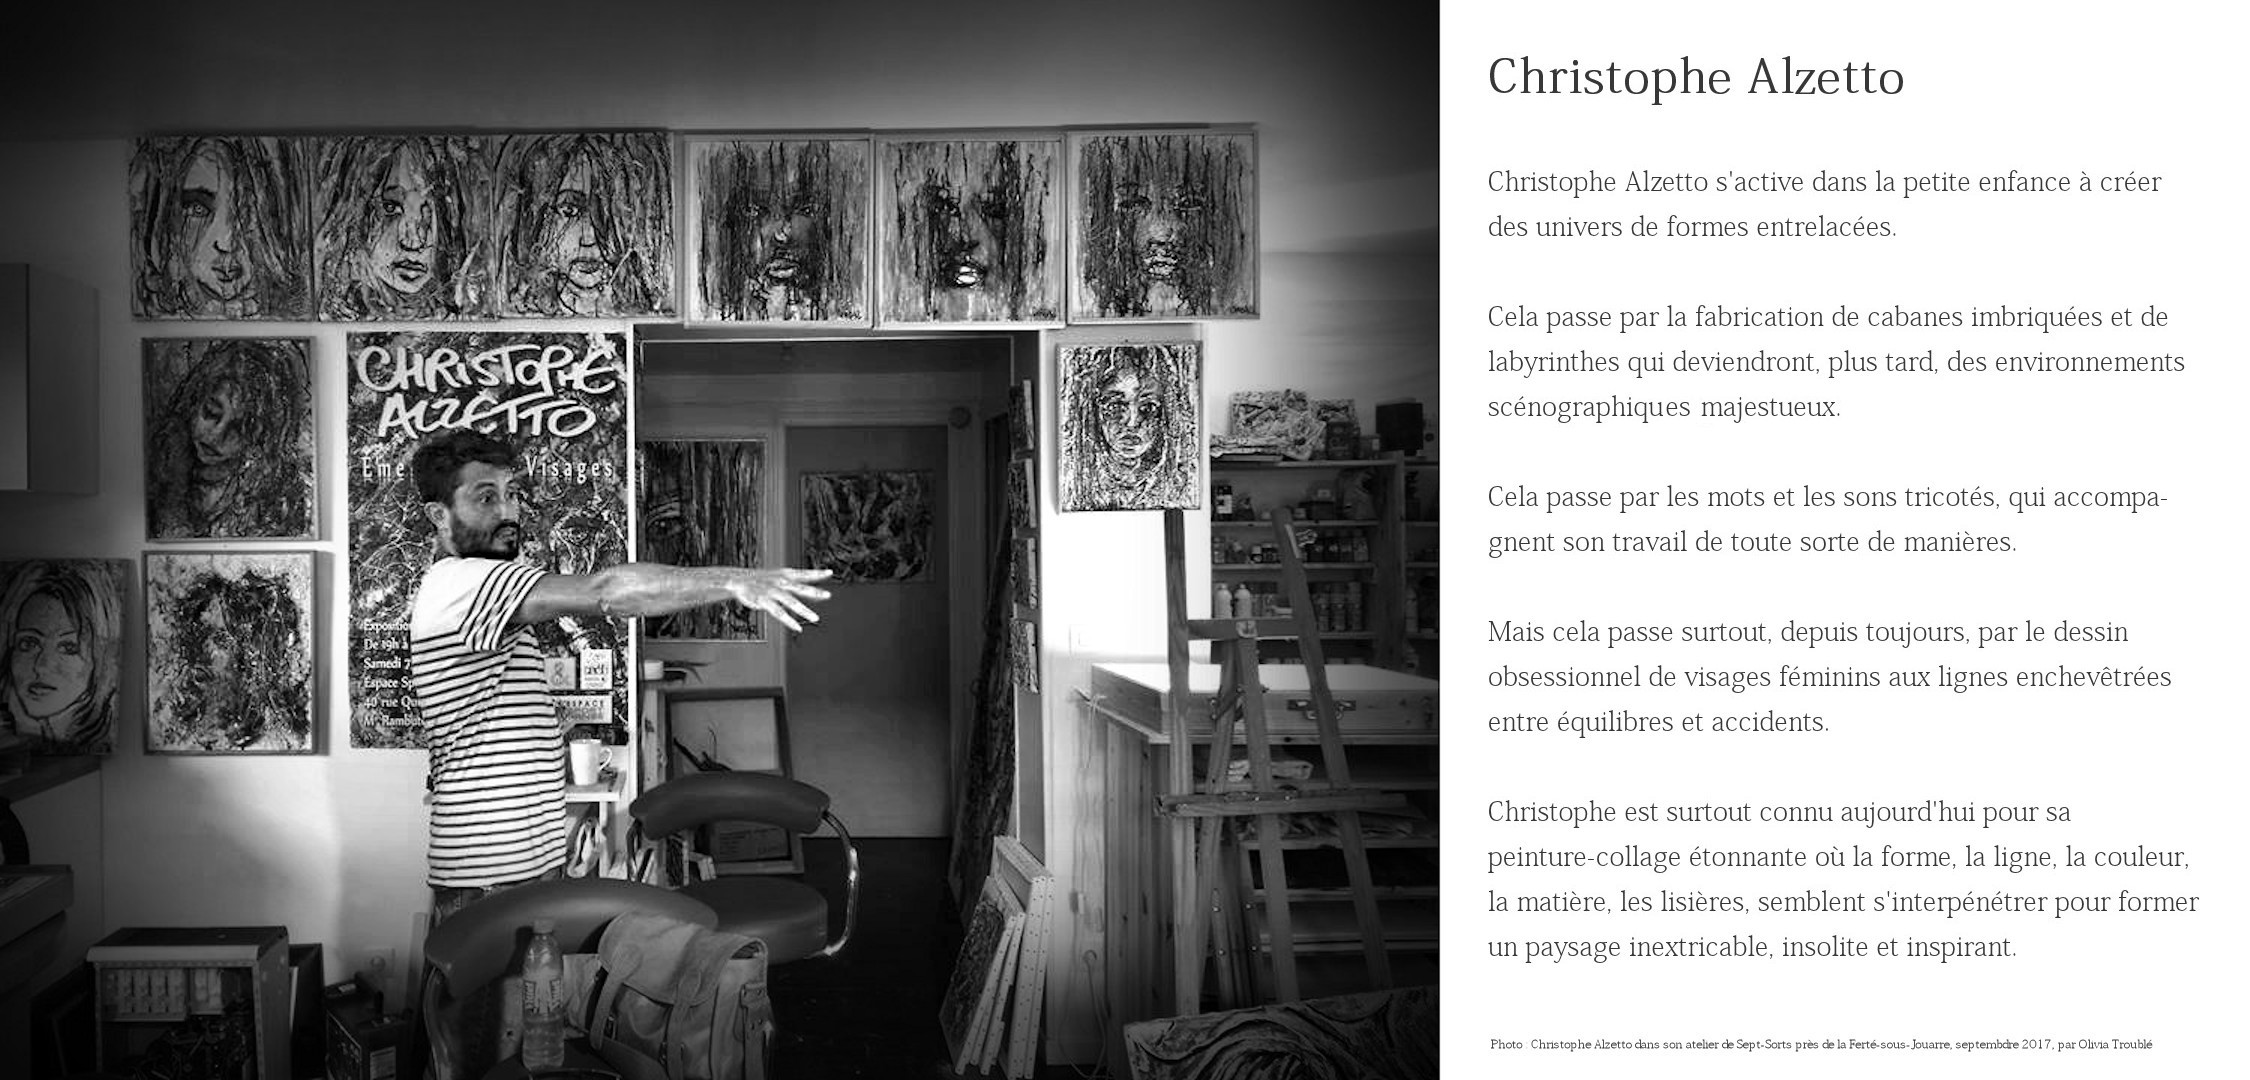 Christophe Alzetto sur une photo noir et blanc dans son atelier, au milieu des peintures. À droite, un texte qui le présente brièvement.